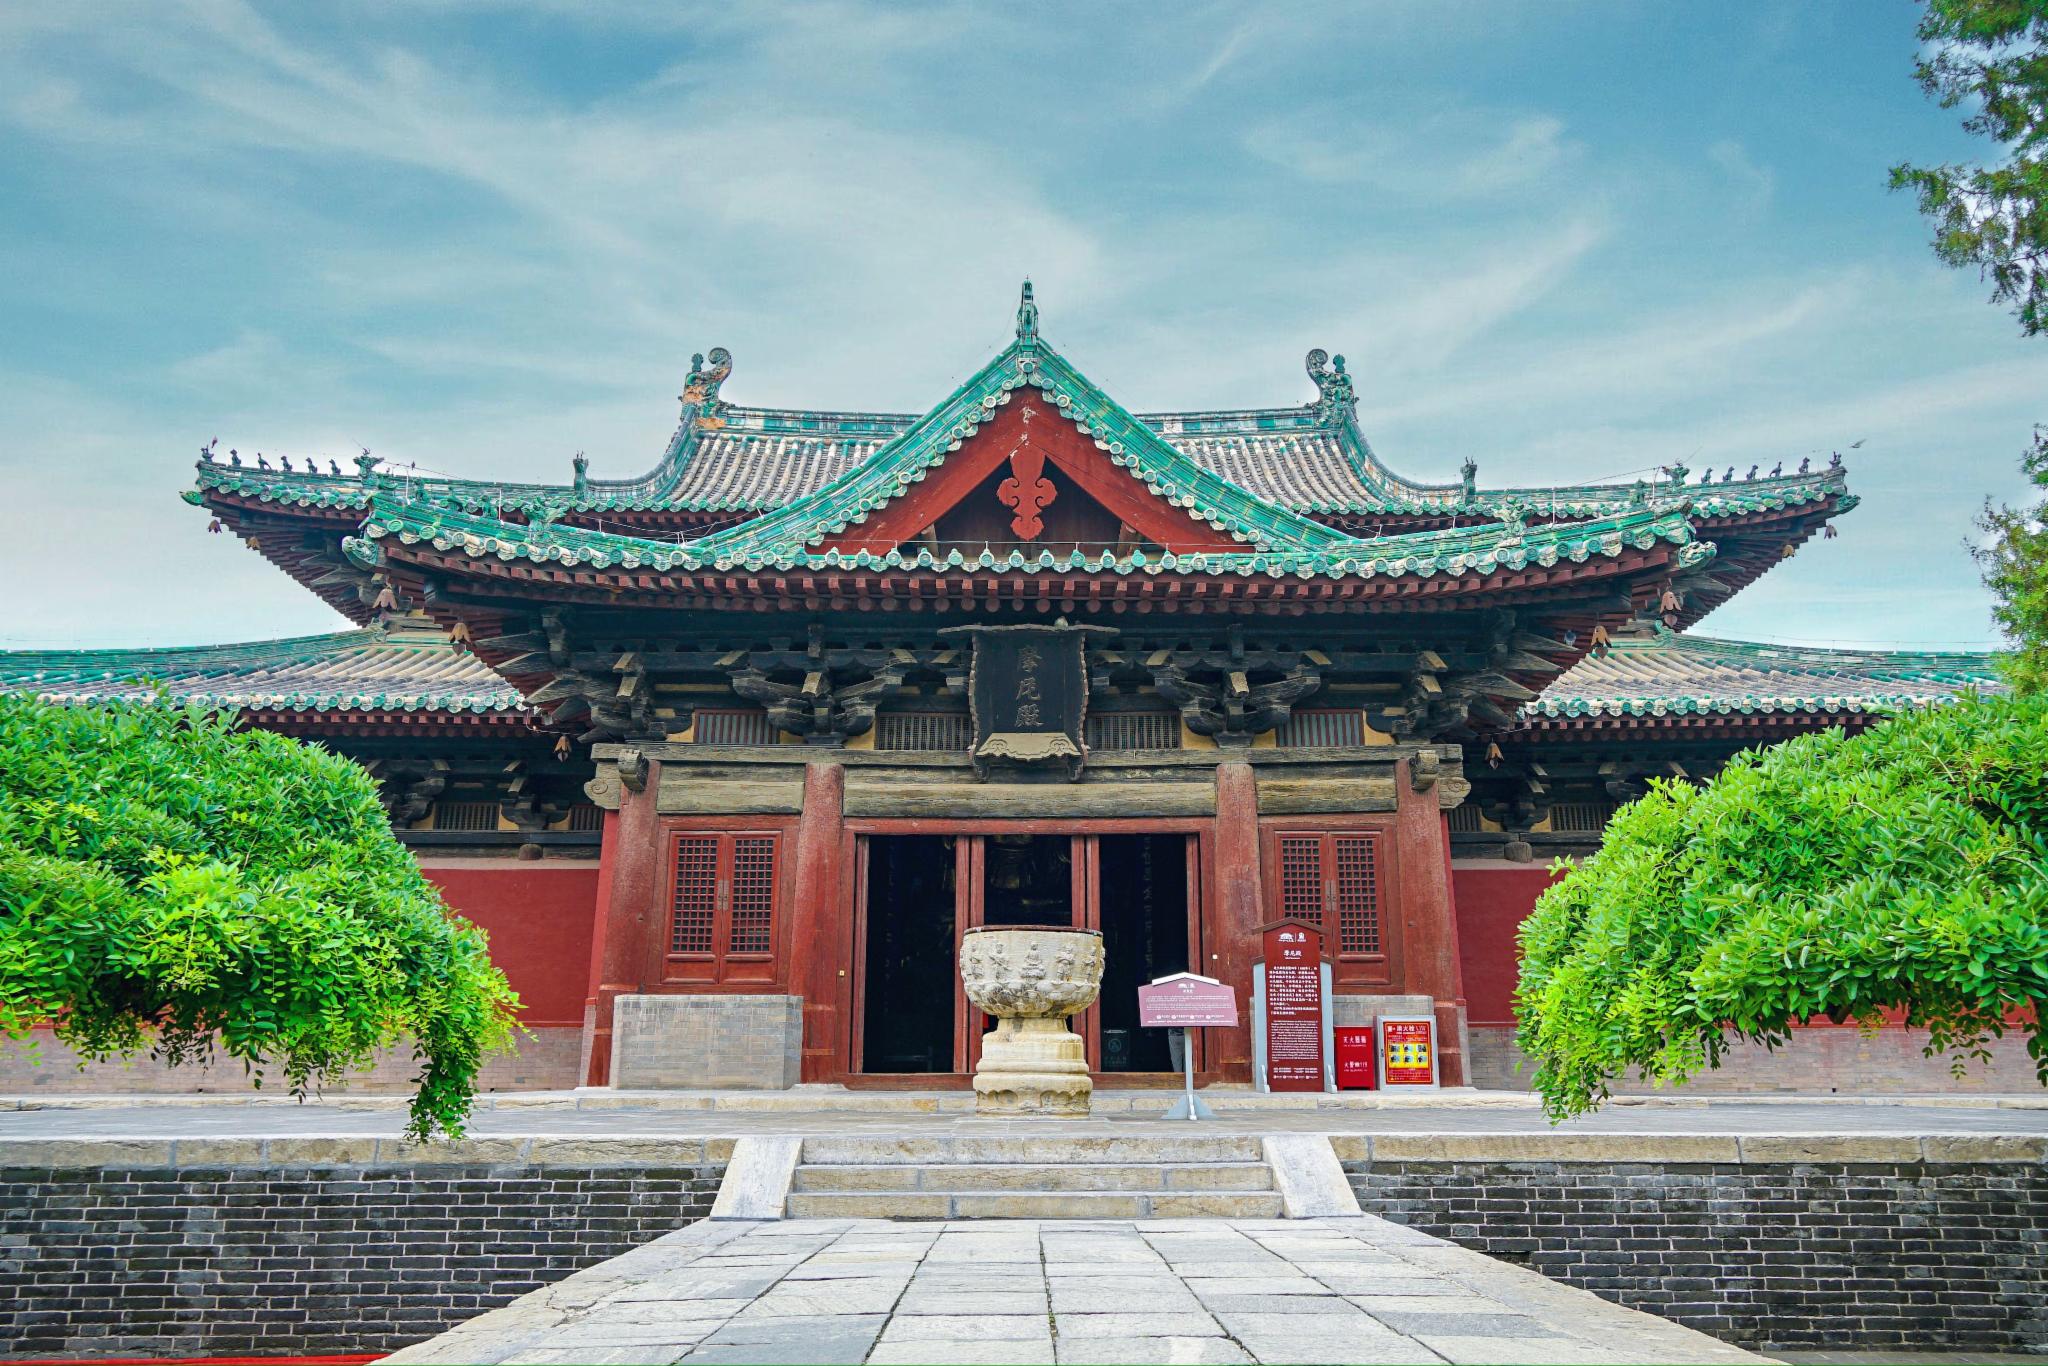 大悲阁内矗立着一尊高大的铜铸大菩萨称大悲菩萨是中国保存最好最高的